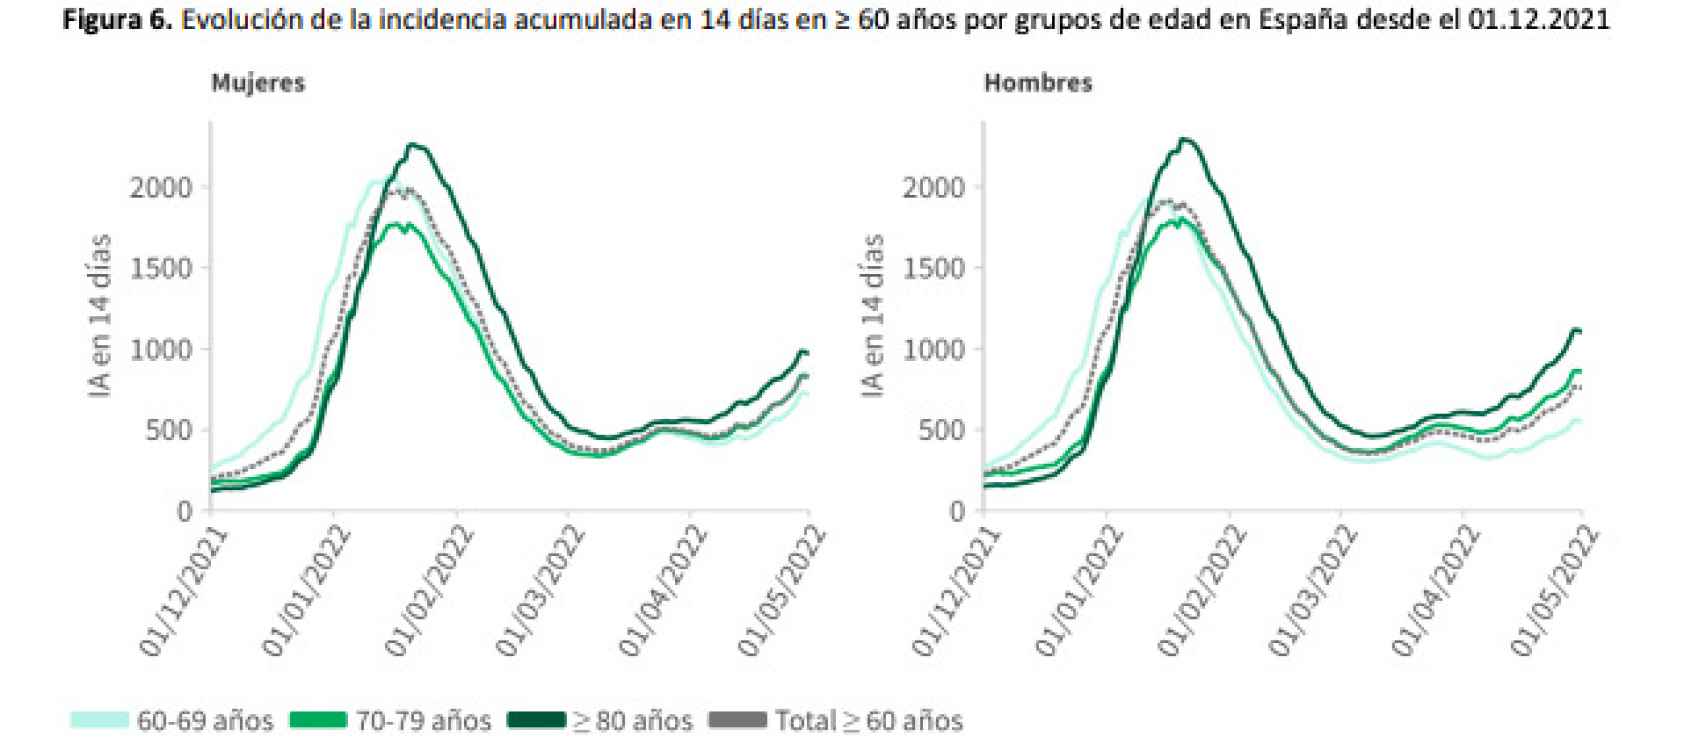 Evolución de la incidencia acumulada en 14 días en ≥ 60 años por grupos de edad en España desde el 01.12.2021